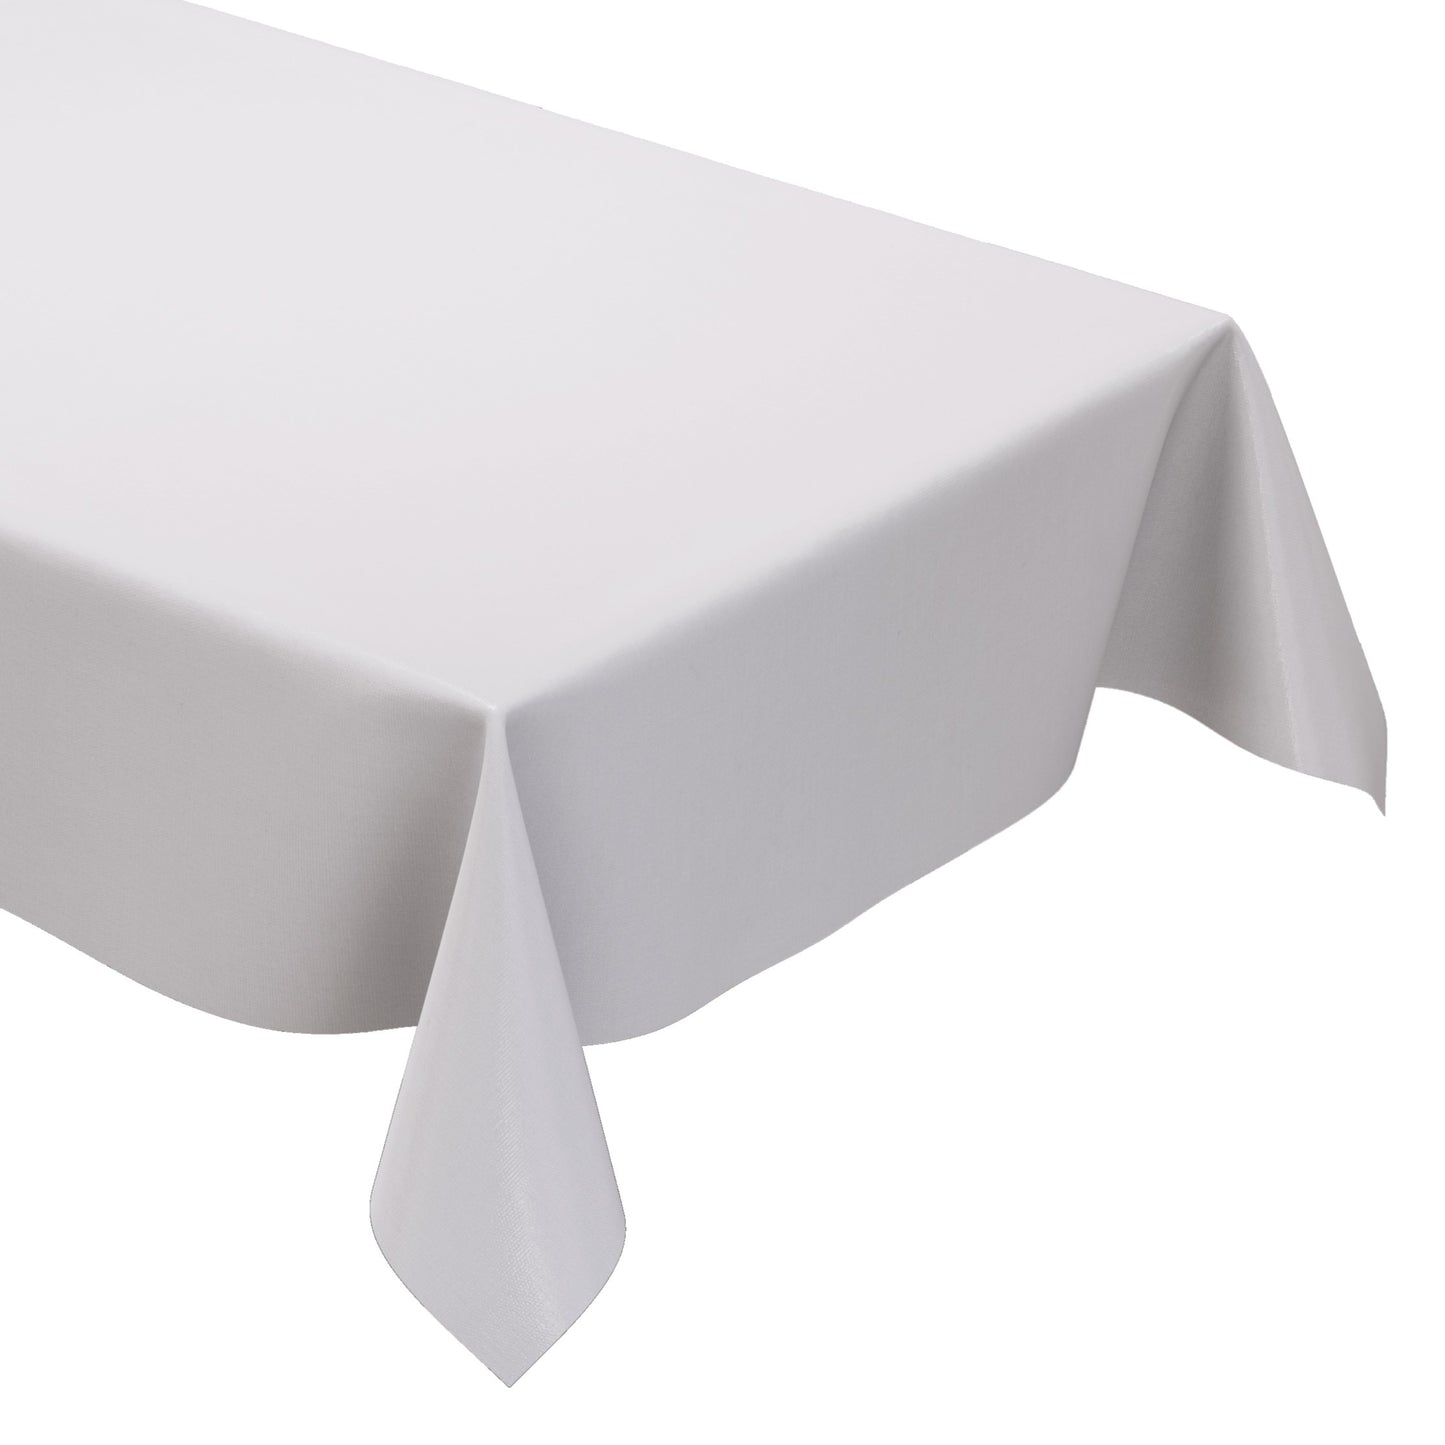 KEVKUS Wachstuch Tischdecke uni 0 Weiß einfarbig wählbar in eckig, rund und oval -